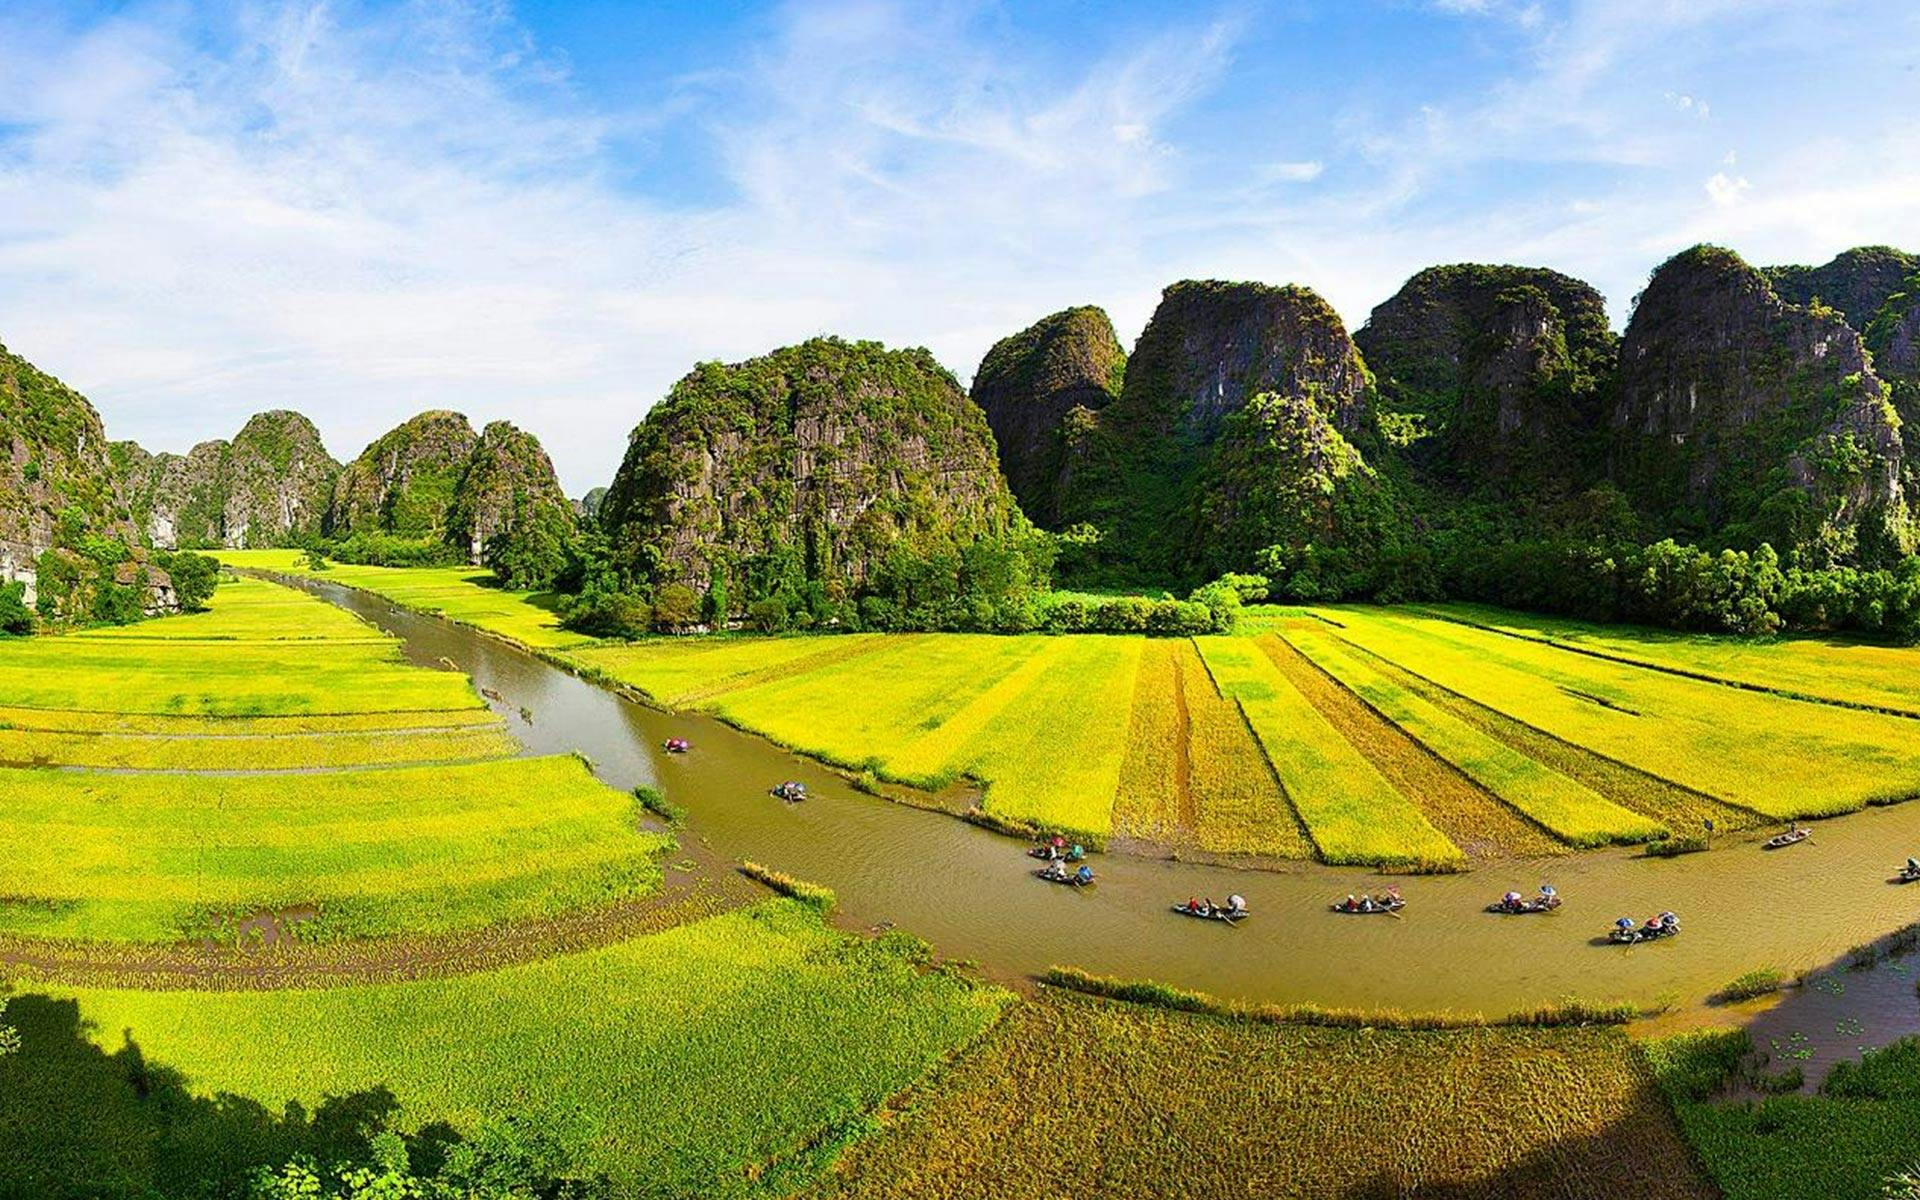 Odkryj najważniejsze atrakcje wycieczki zorganizowanej po Wietnamie w ciągu 7 dni